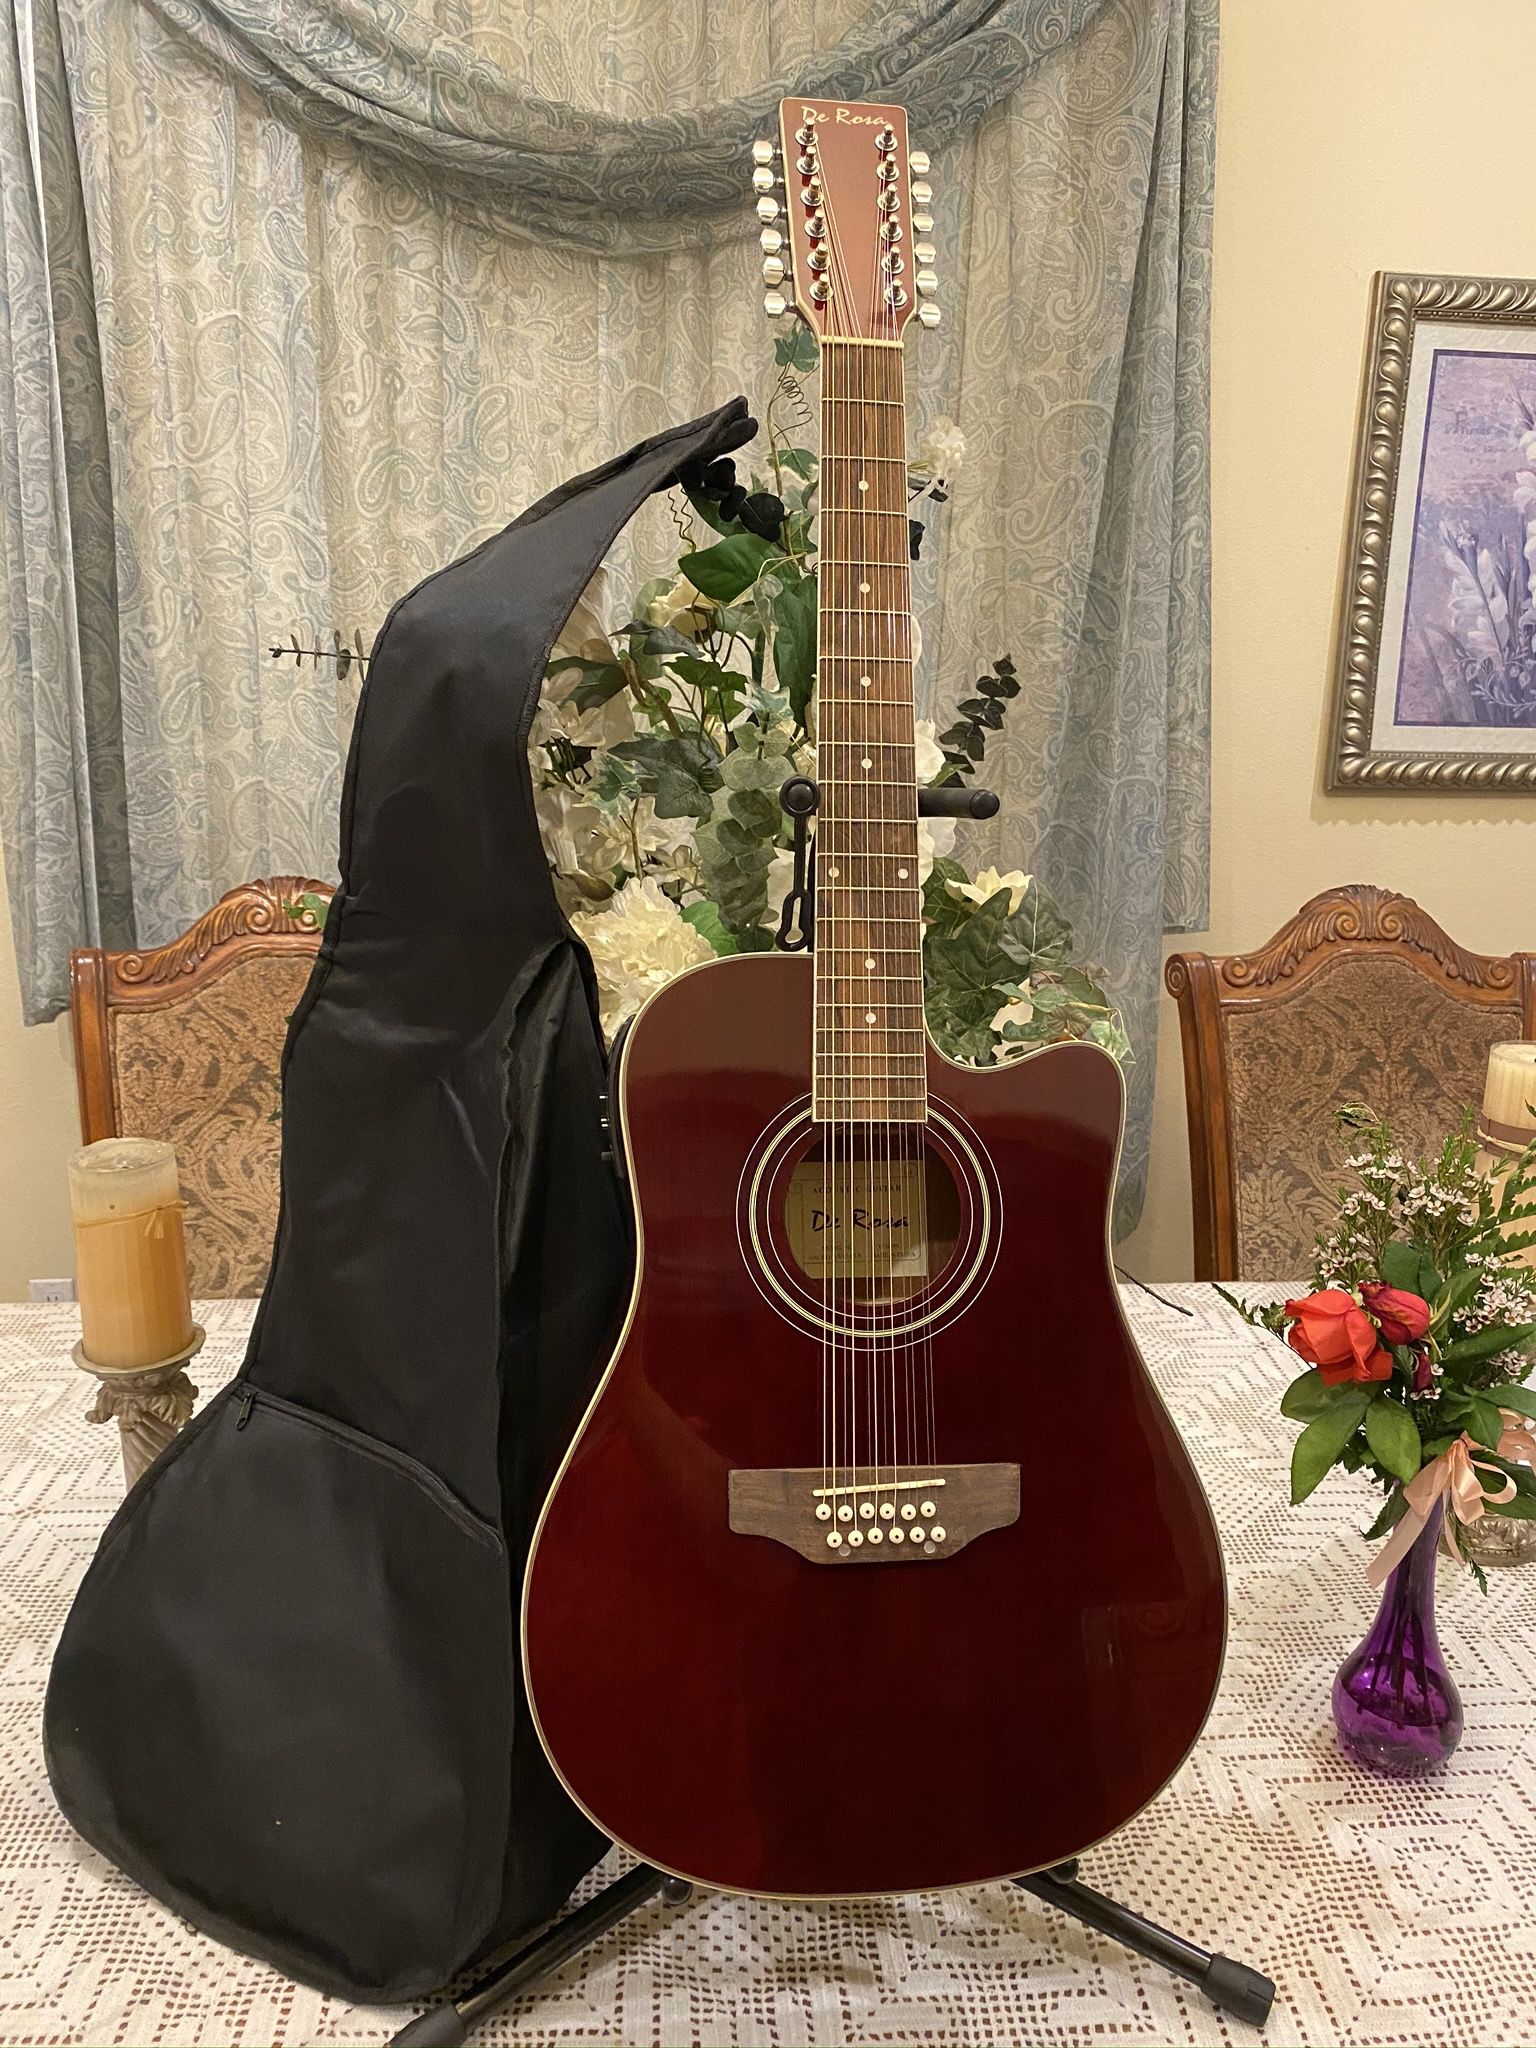 De Rosa 12 Strings Electric Acoustic Guitar 